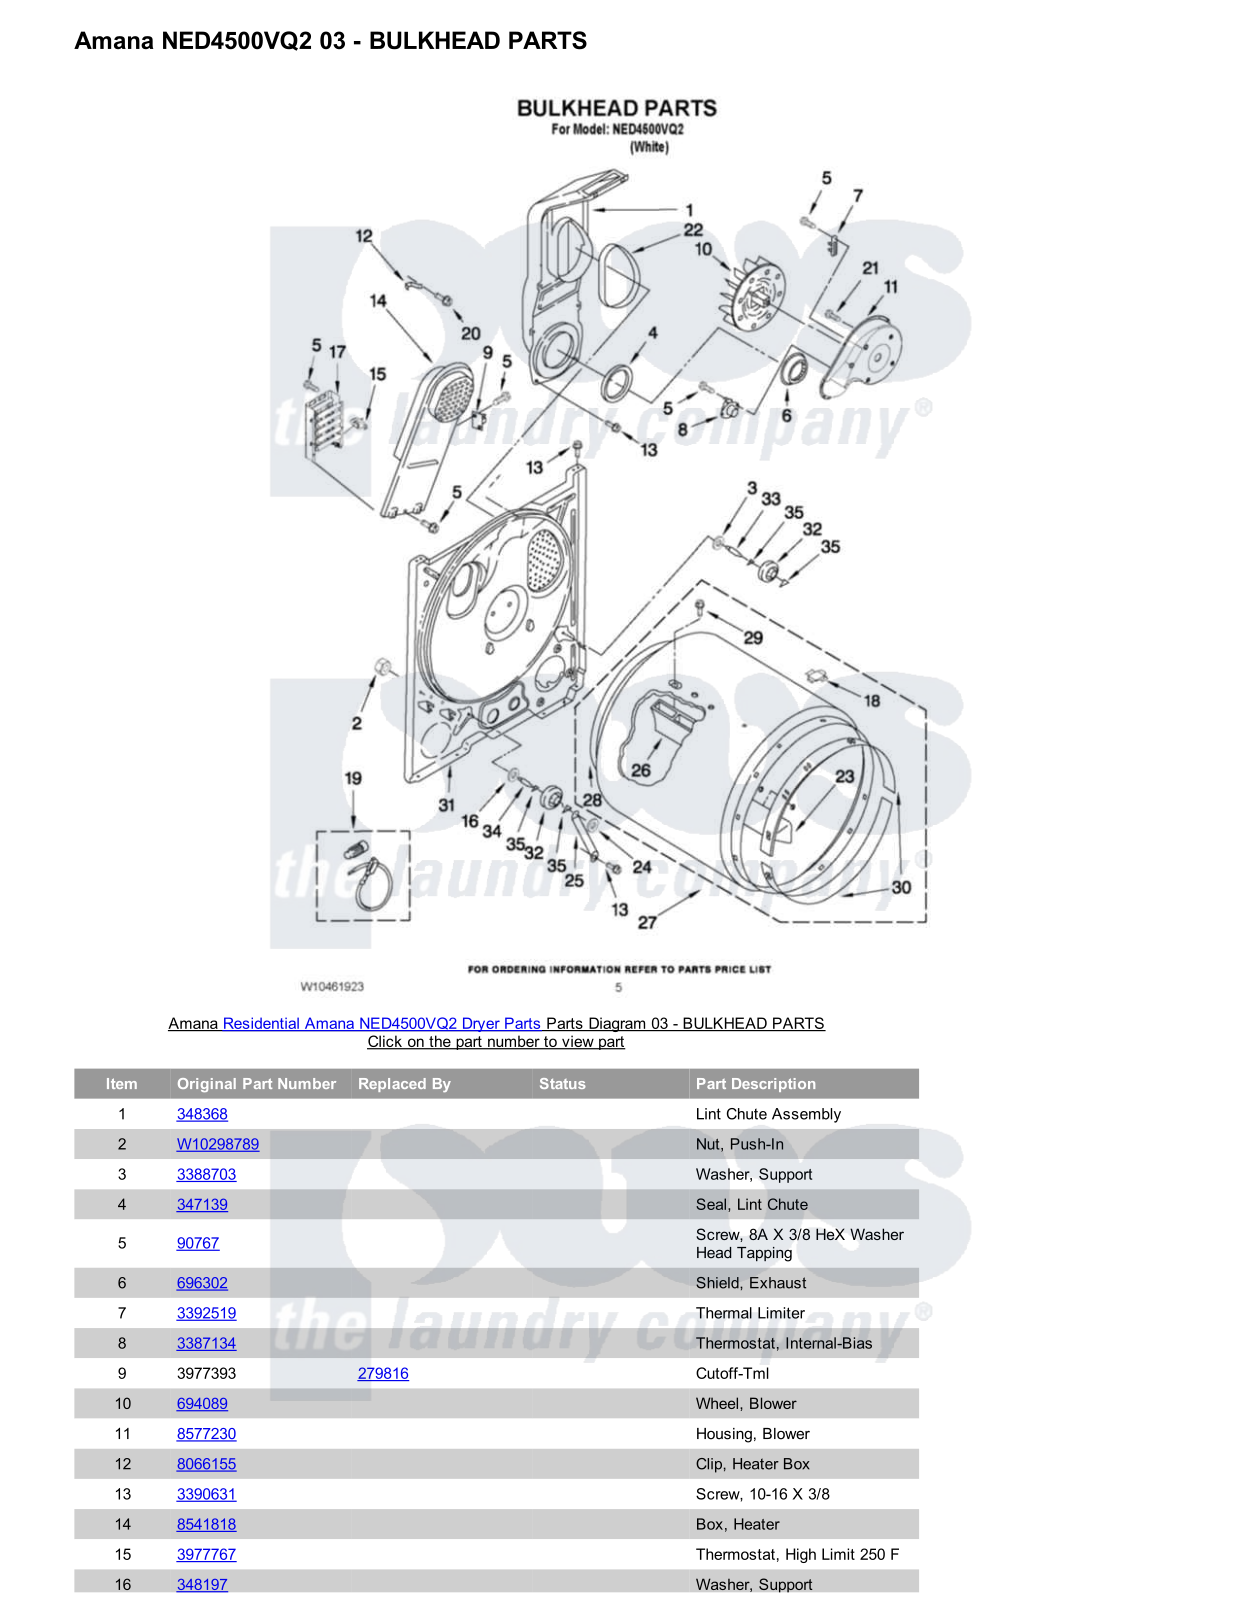 Amana NED4500VQ2 Parts Diagram